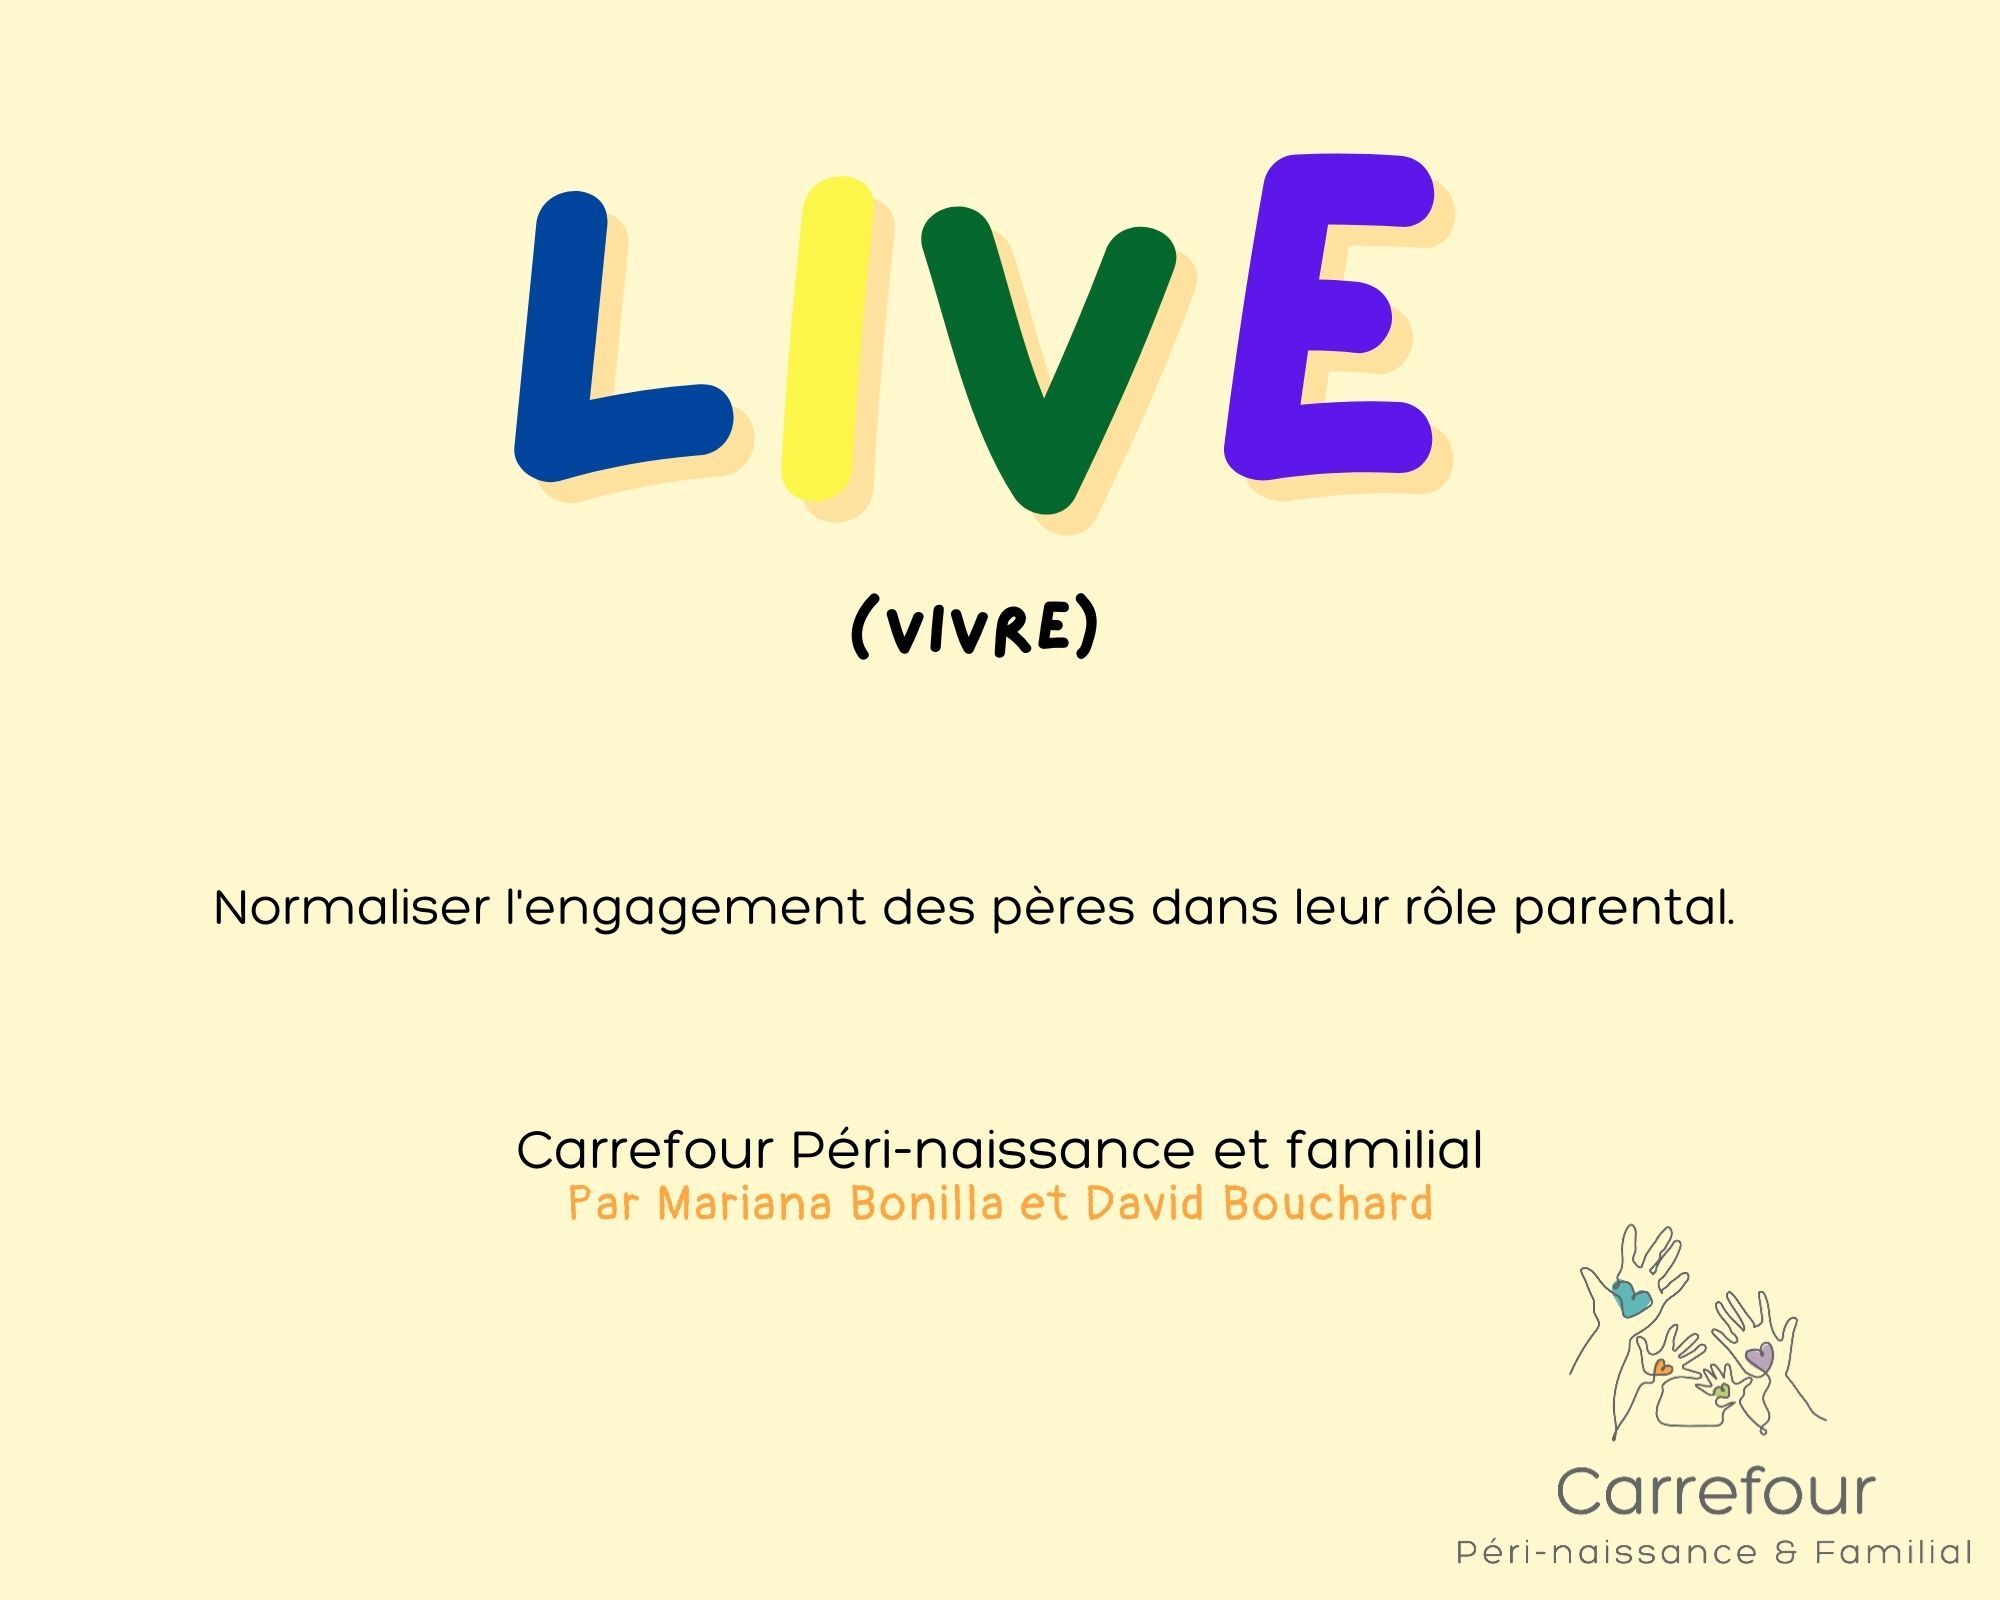 Live (vivre) Normaliser l'engagement des pères dans leur rôle parental. Carrefour Péri-naissance et familial par Mariana Bonilla et David Bouchard.